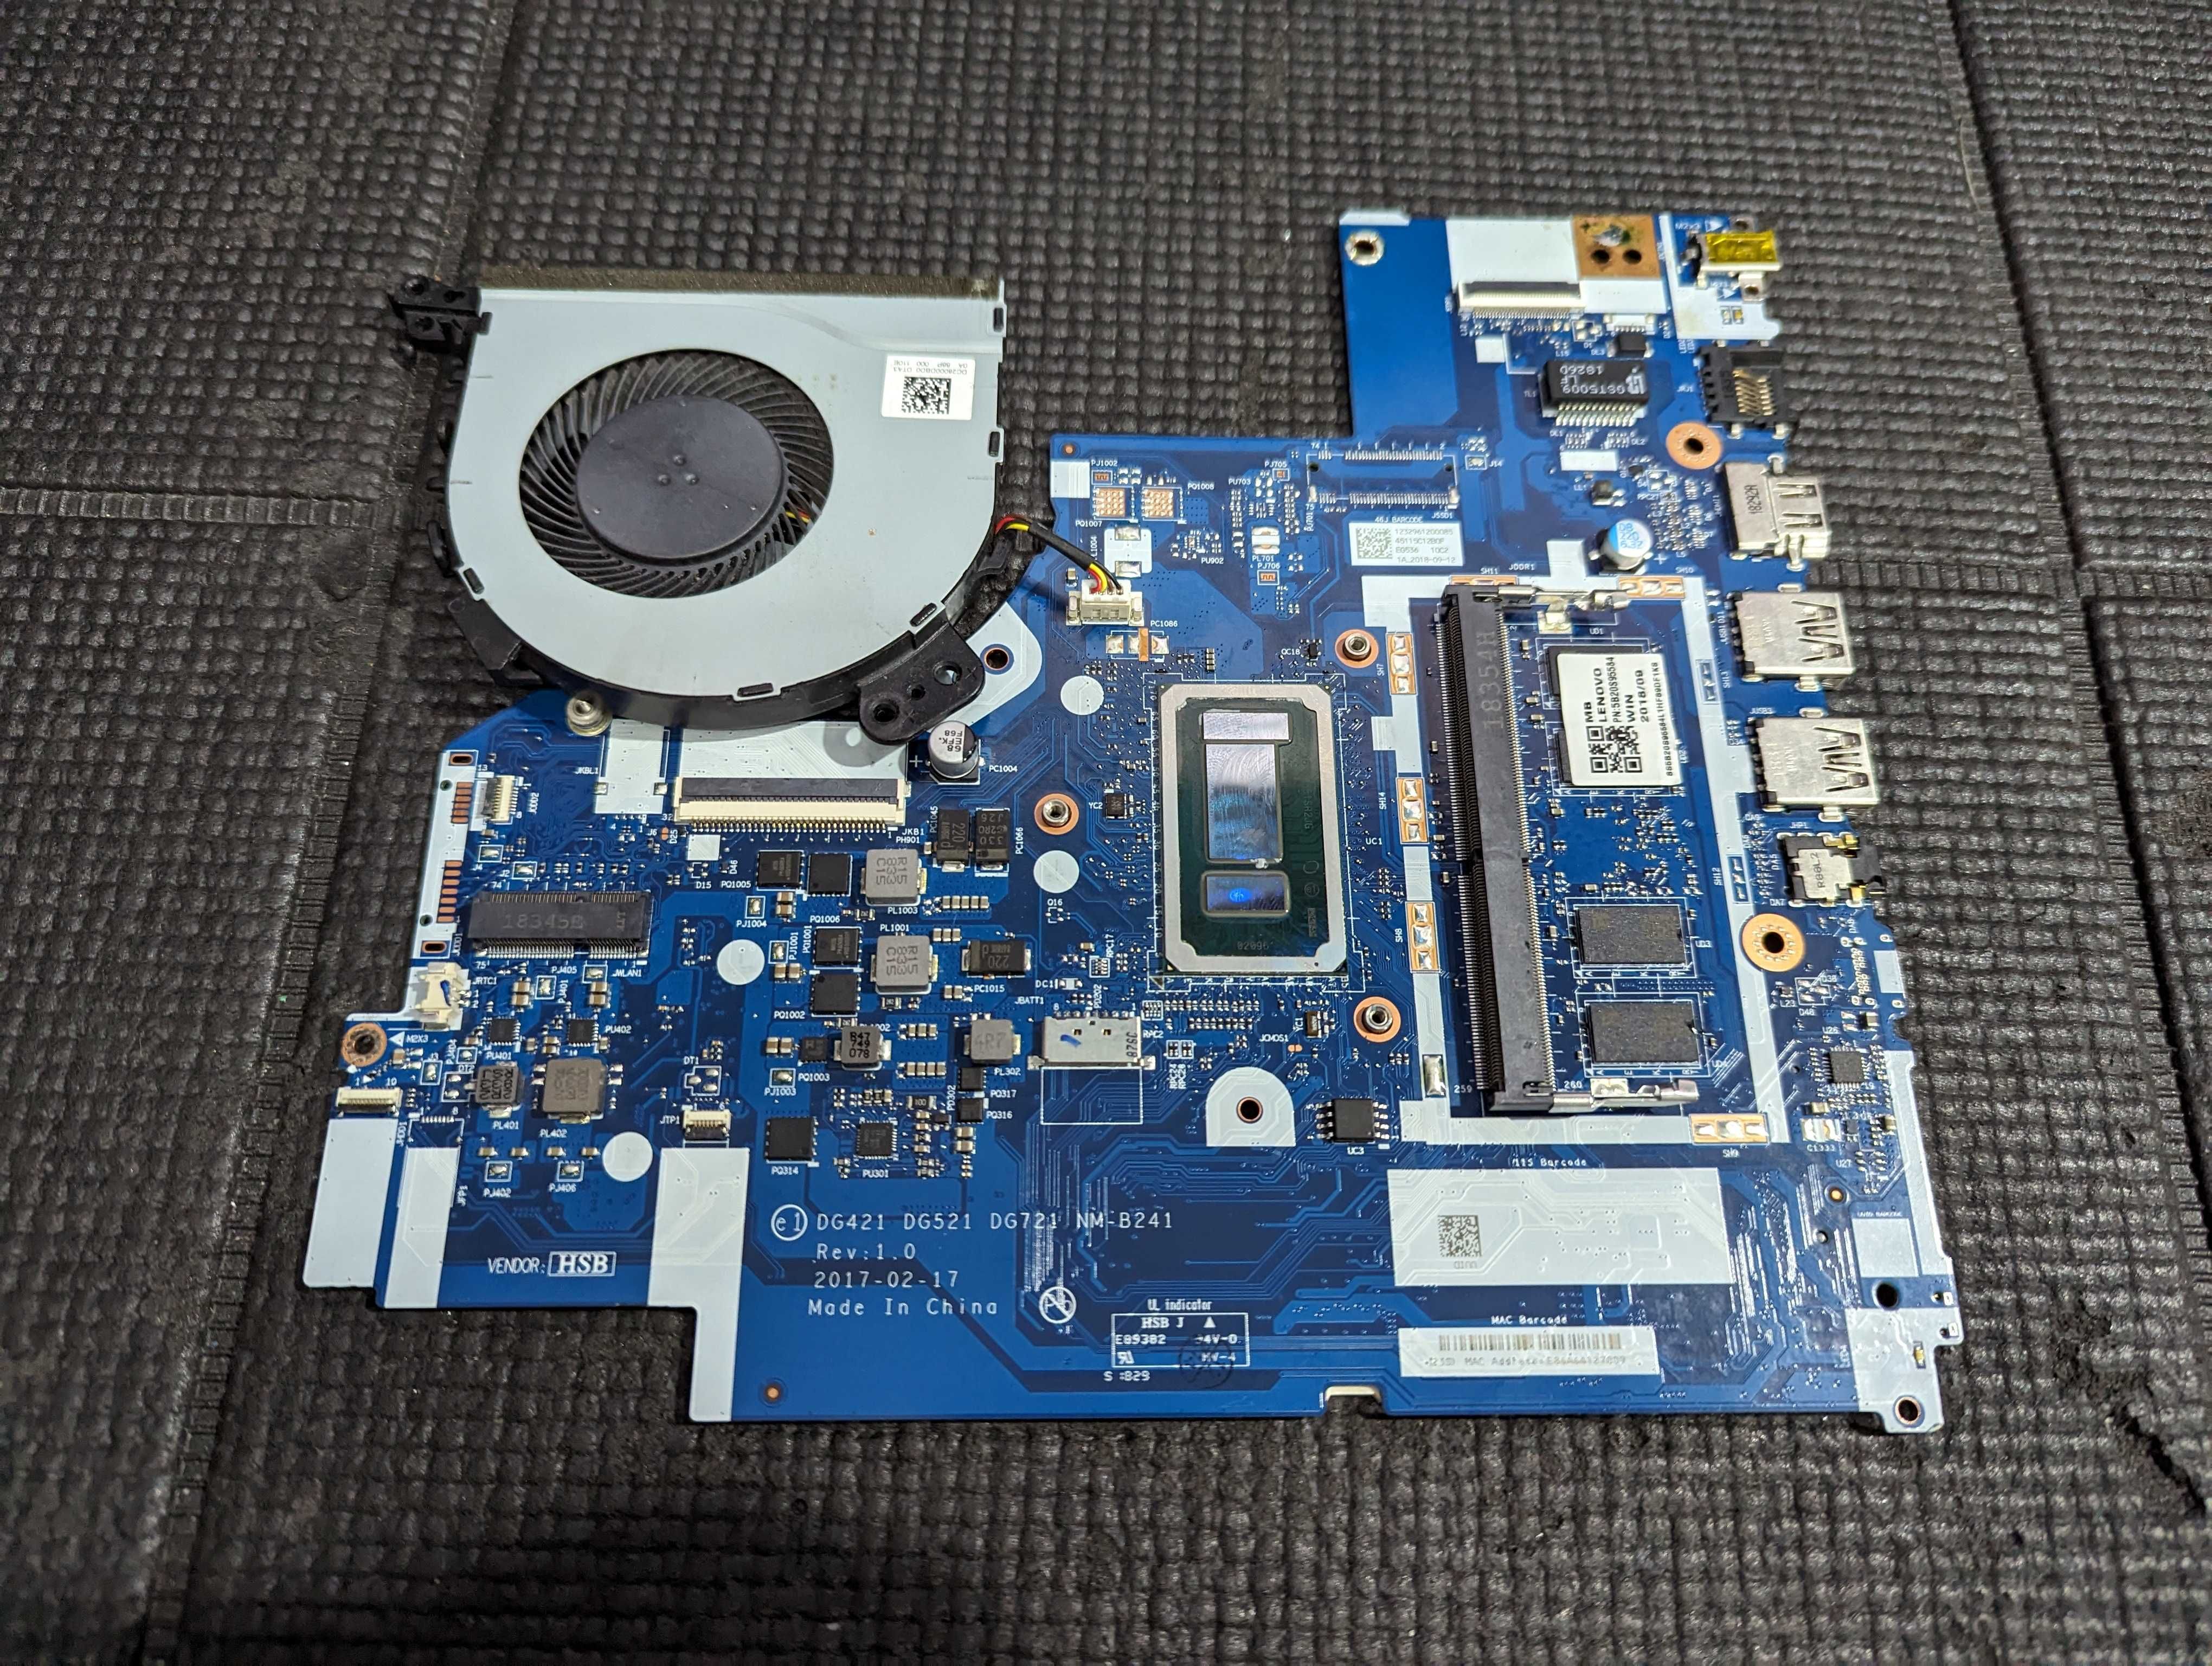 OEM Mother-Board Lenovo Ideapad DG421 DG521 DG721 NM-B241 Rev: 1.0